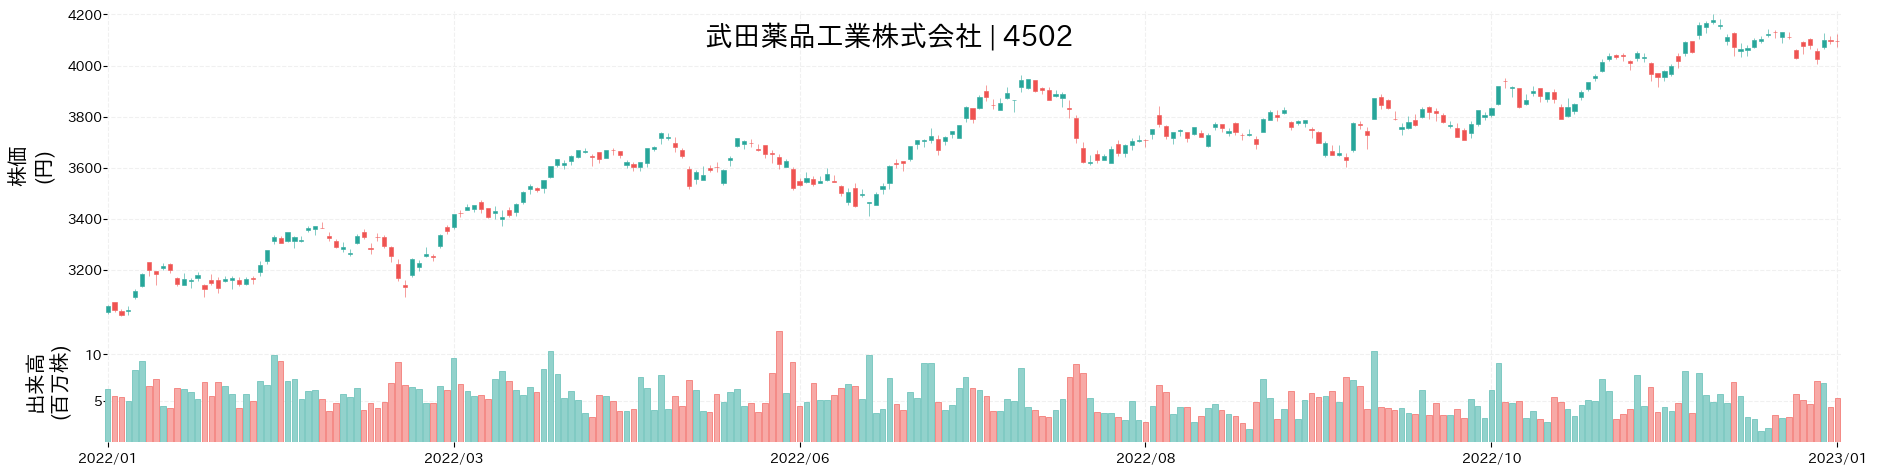 武田薬品工業の株価推移(2022)